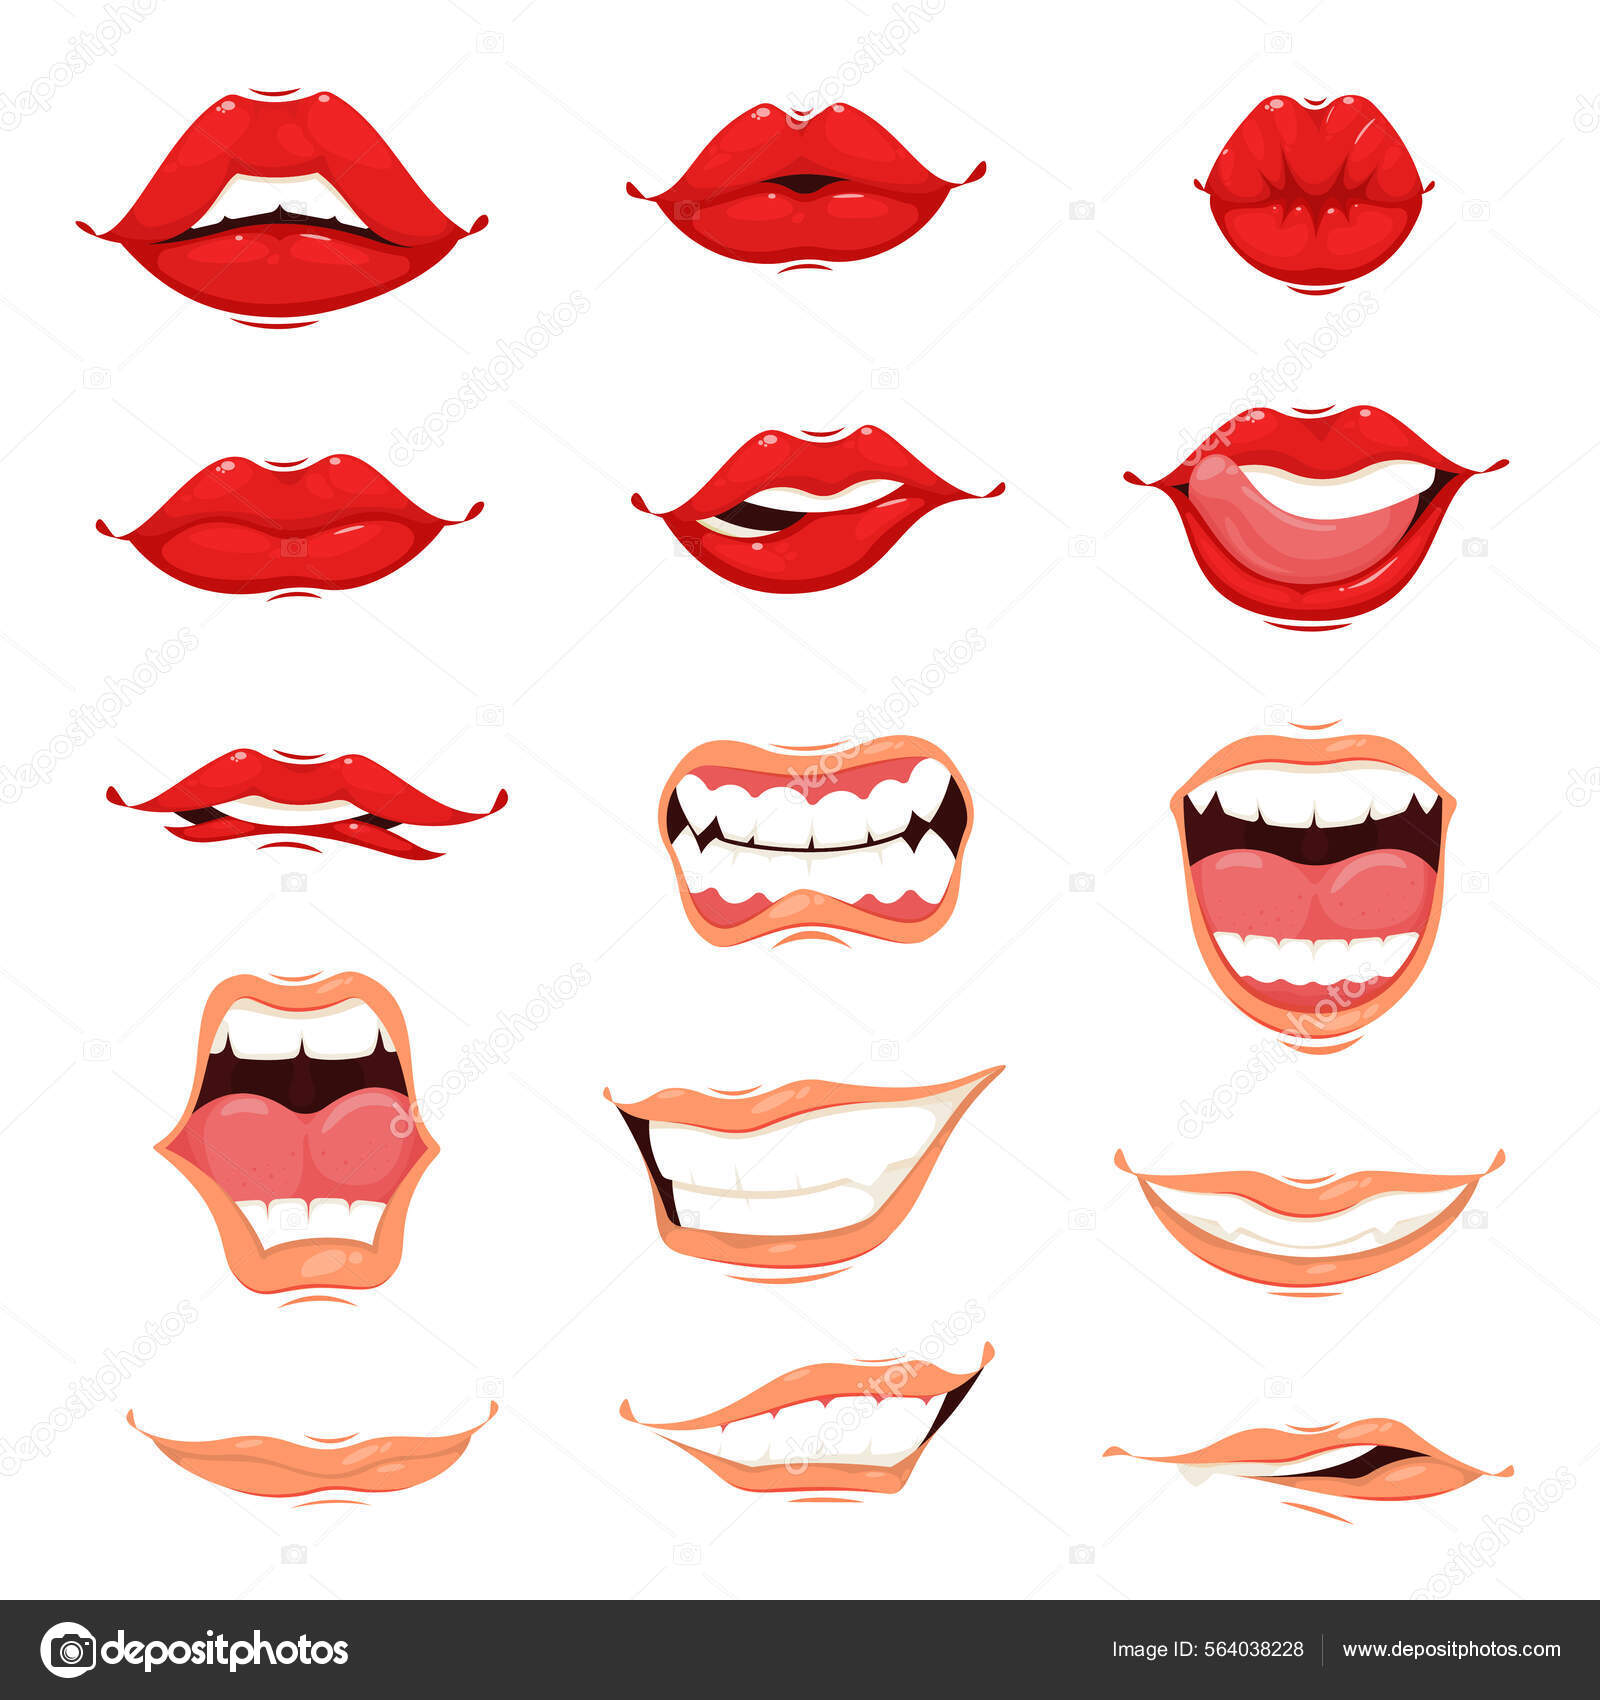 Conjunto de desenhos animados da boca humana imagem vetorial de  macrovector© 564038228